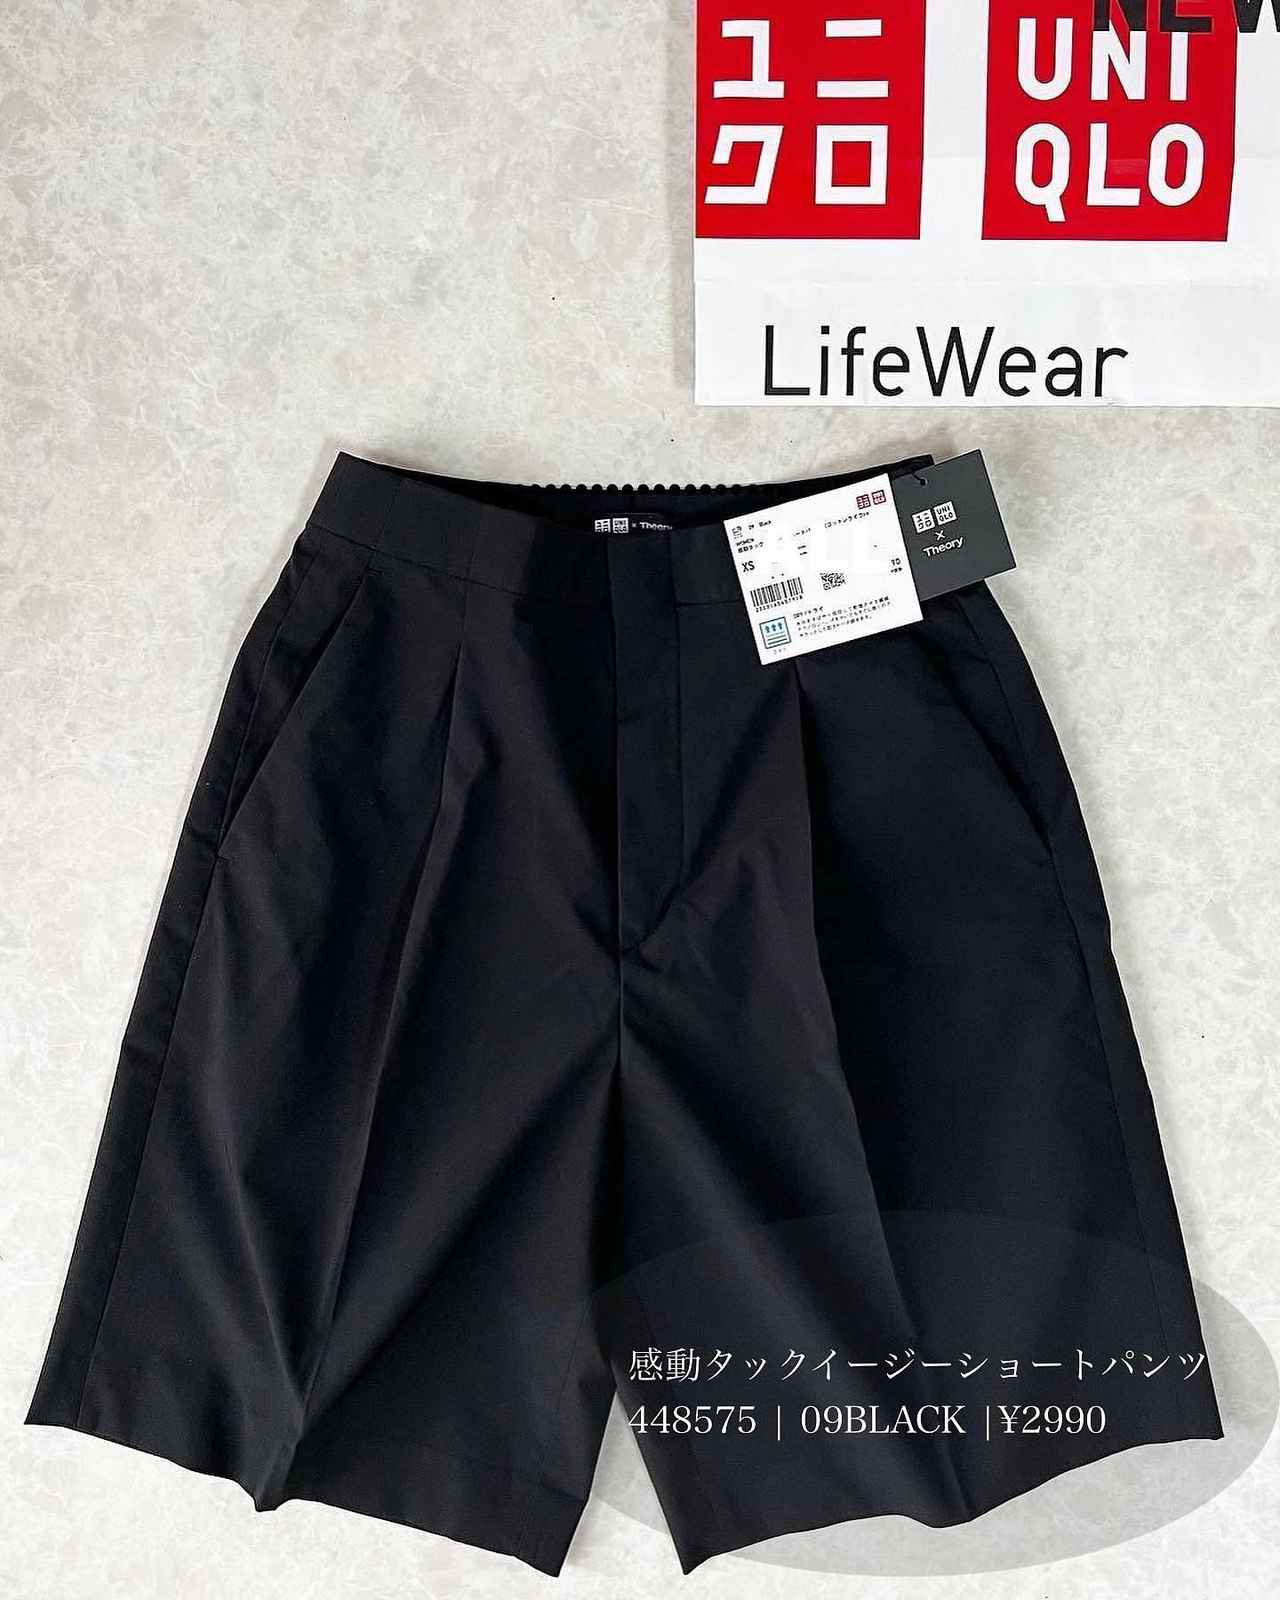 UNIQLO メンズショートパンツ 黒 Lサイズ ユニクロ 専門店 - パンツ